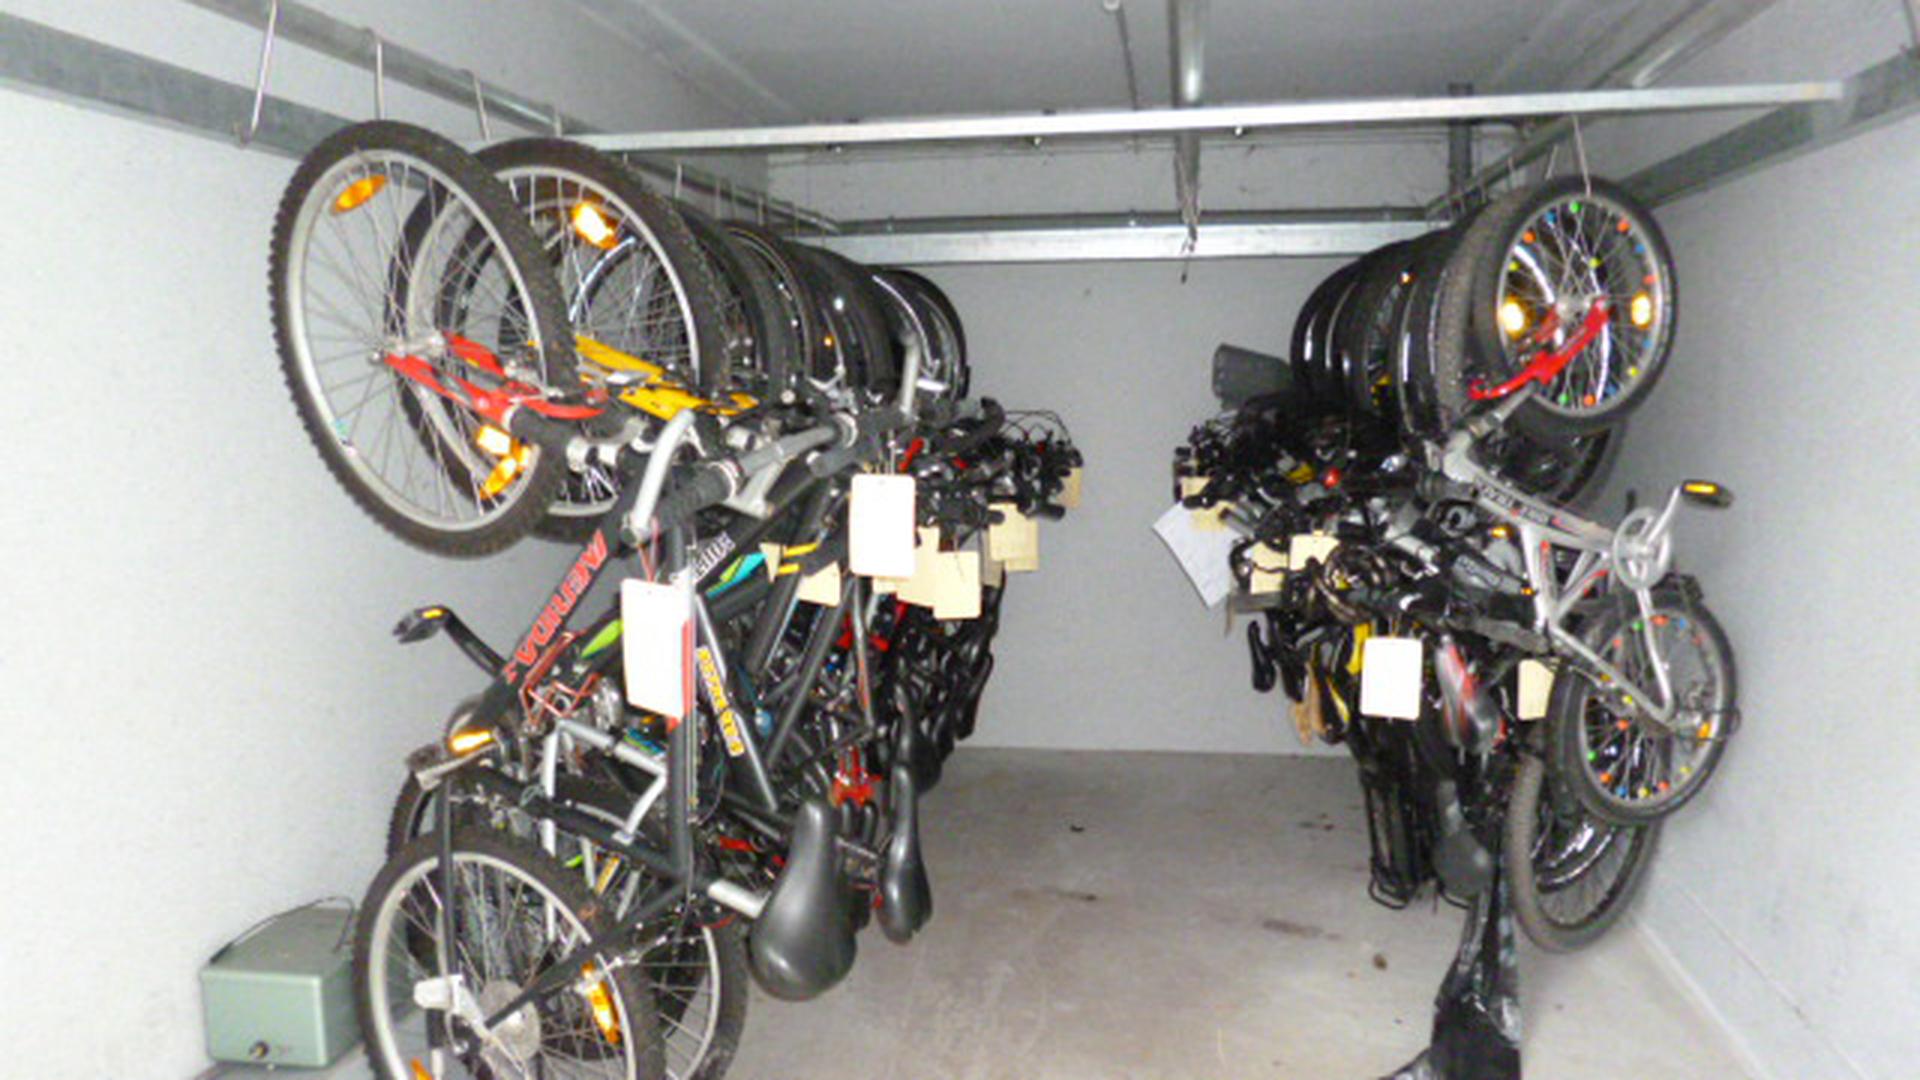 Wegen der Corona-Pandemie konnten keine Fundsachenversteigerungen stattfinden. Vor allem Fahrräder sammelten sich daher an.